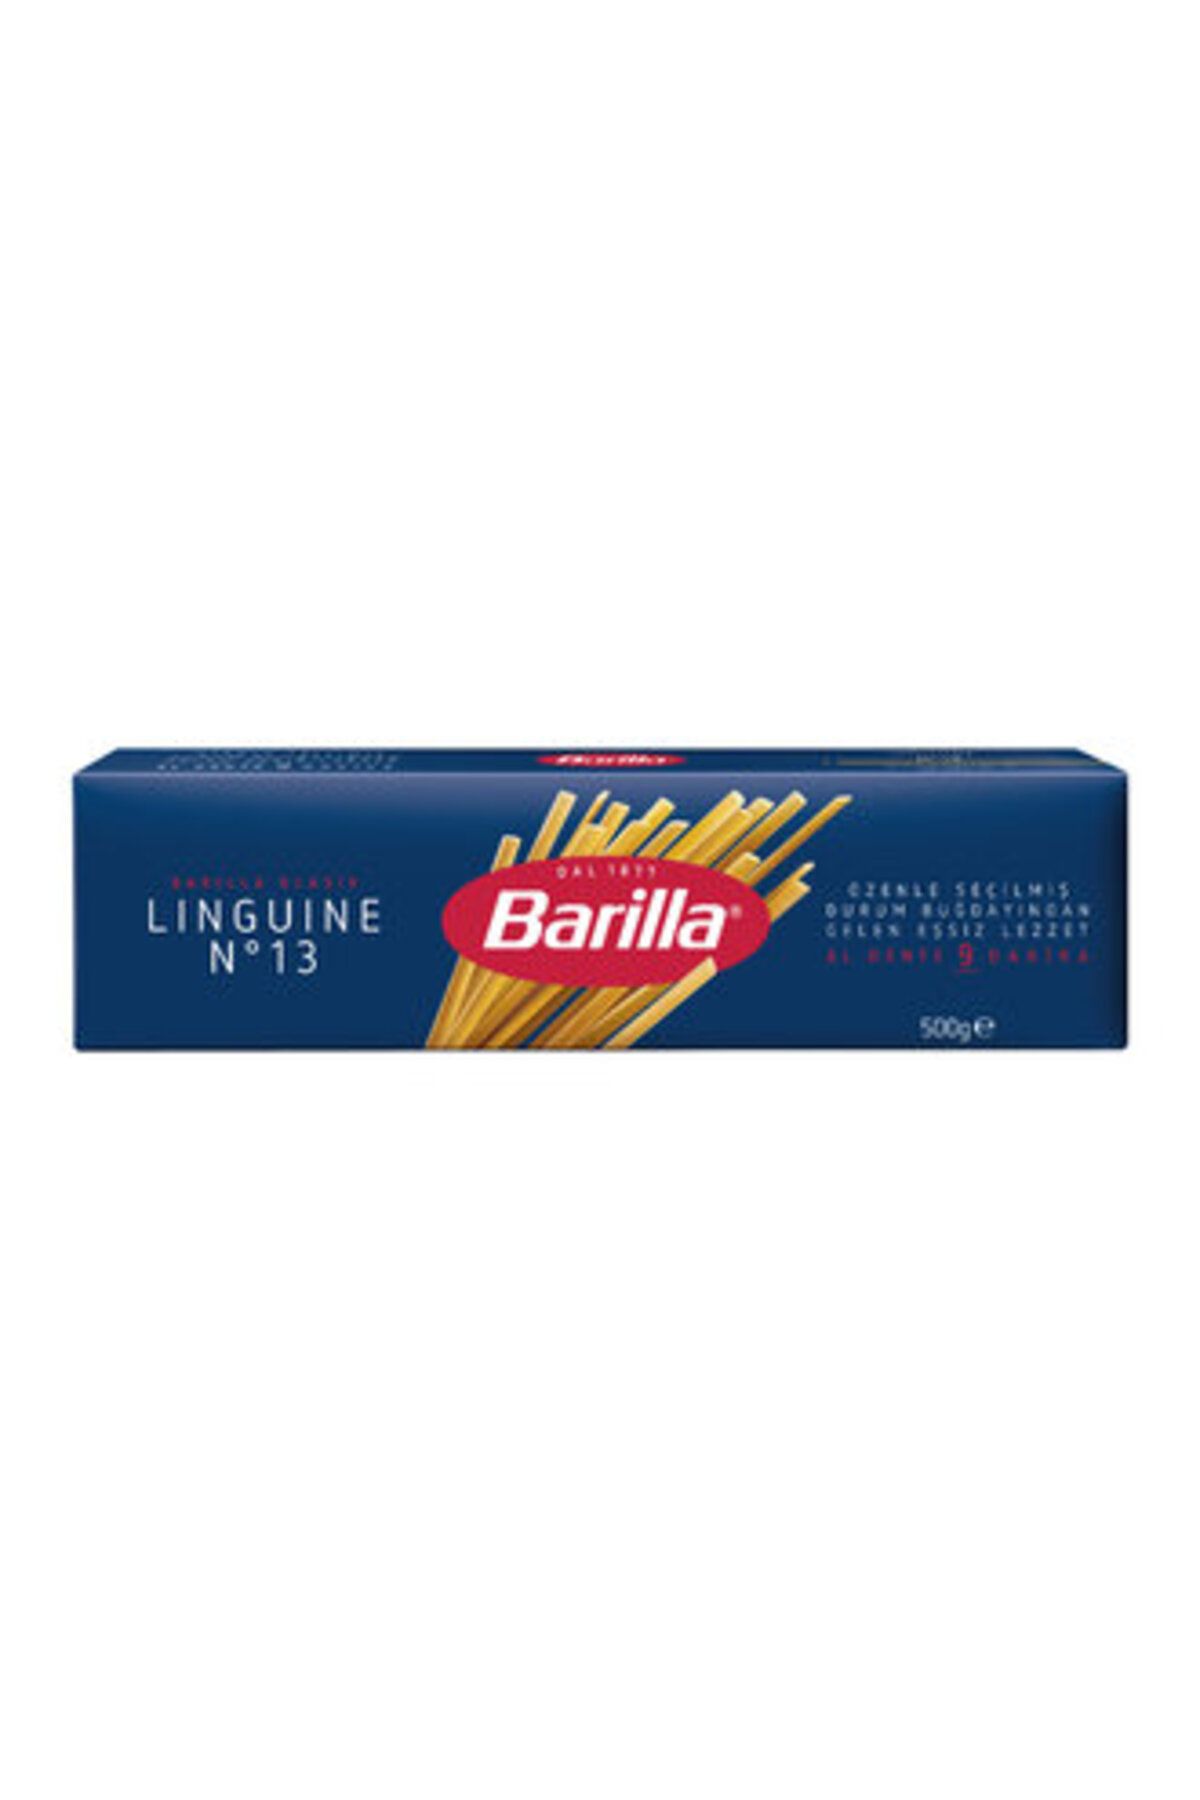 Barilla Linguine (Yassı) Spagetti Makarna No.13 500 Gr ( 5 ADET )